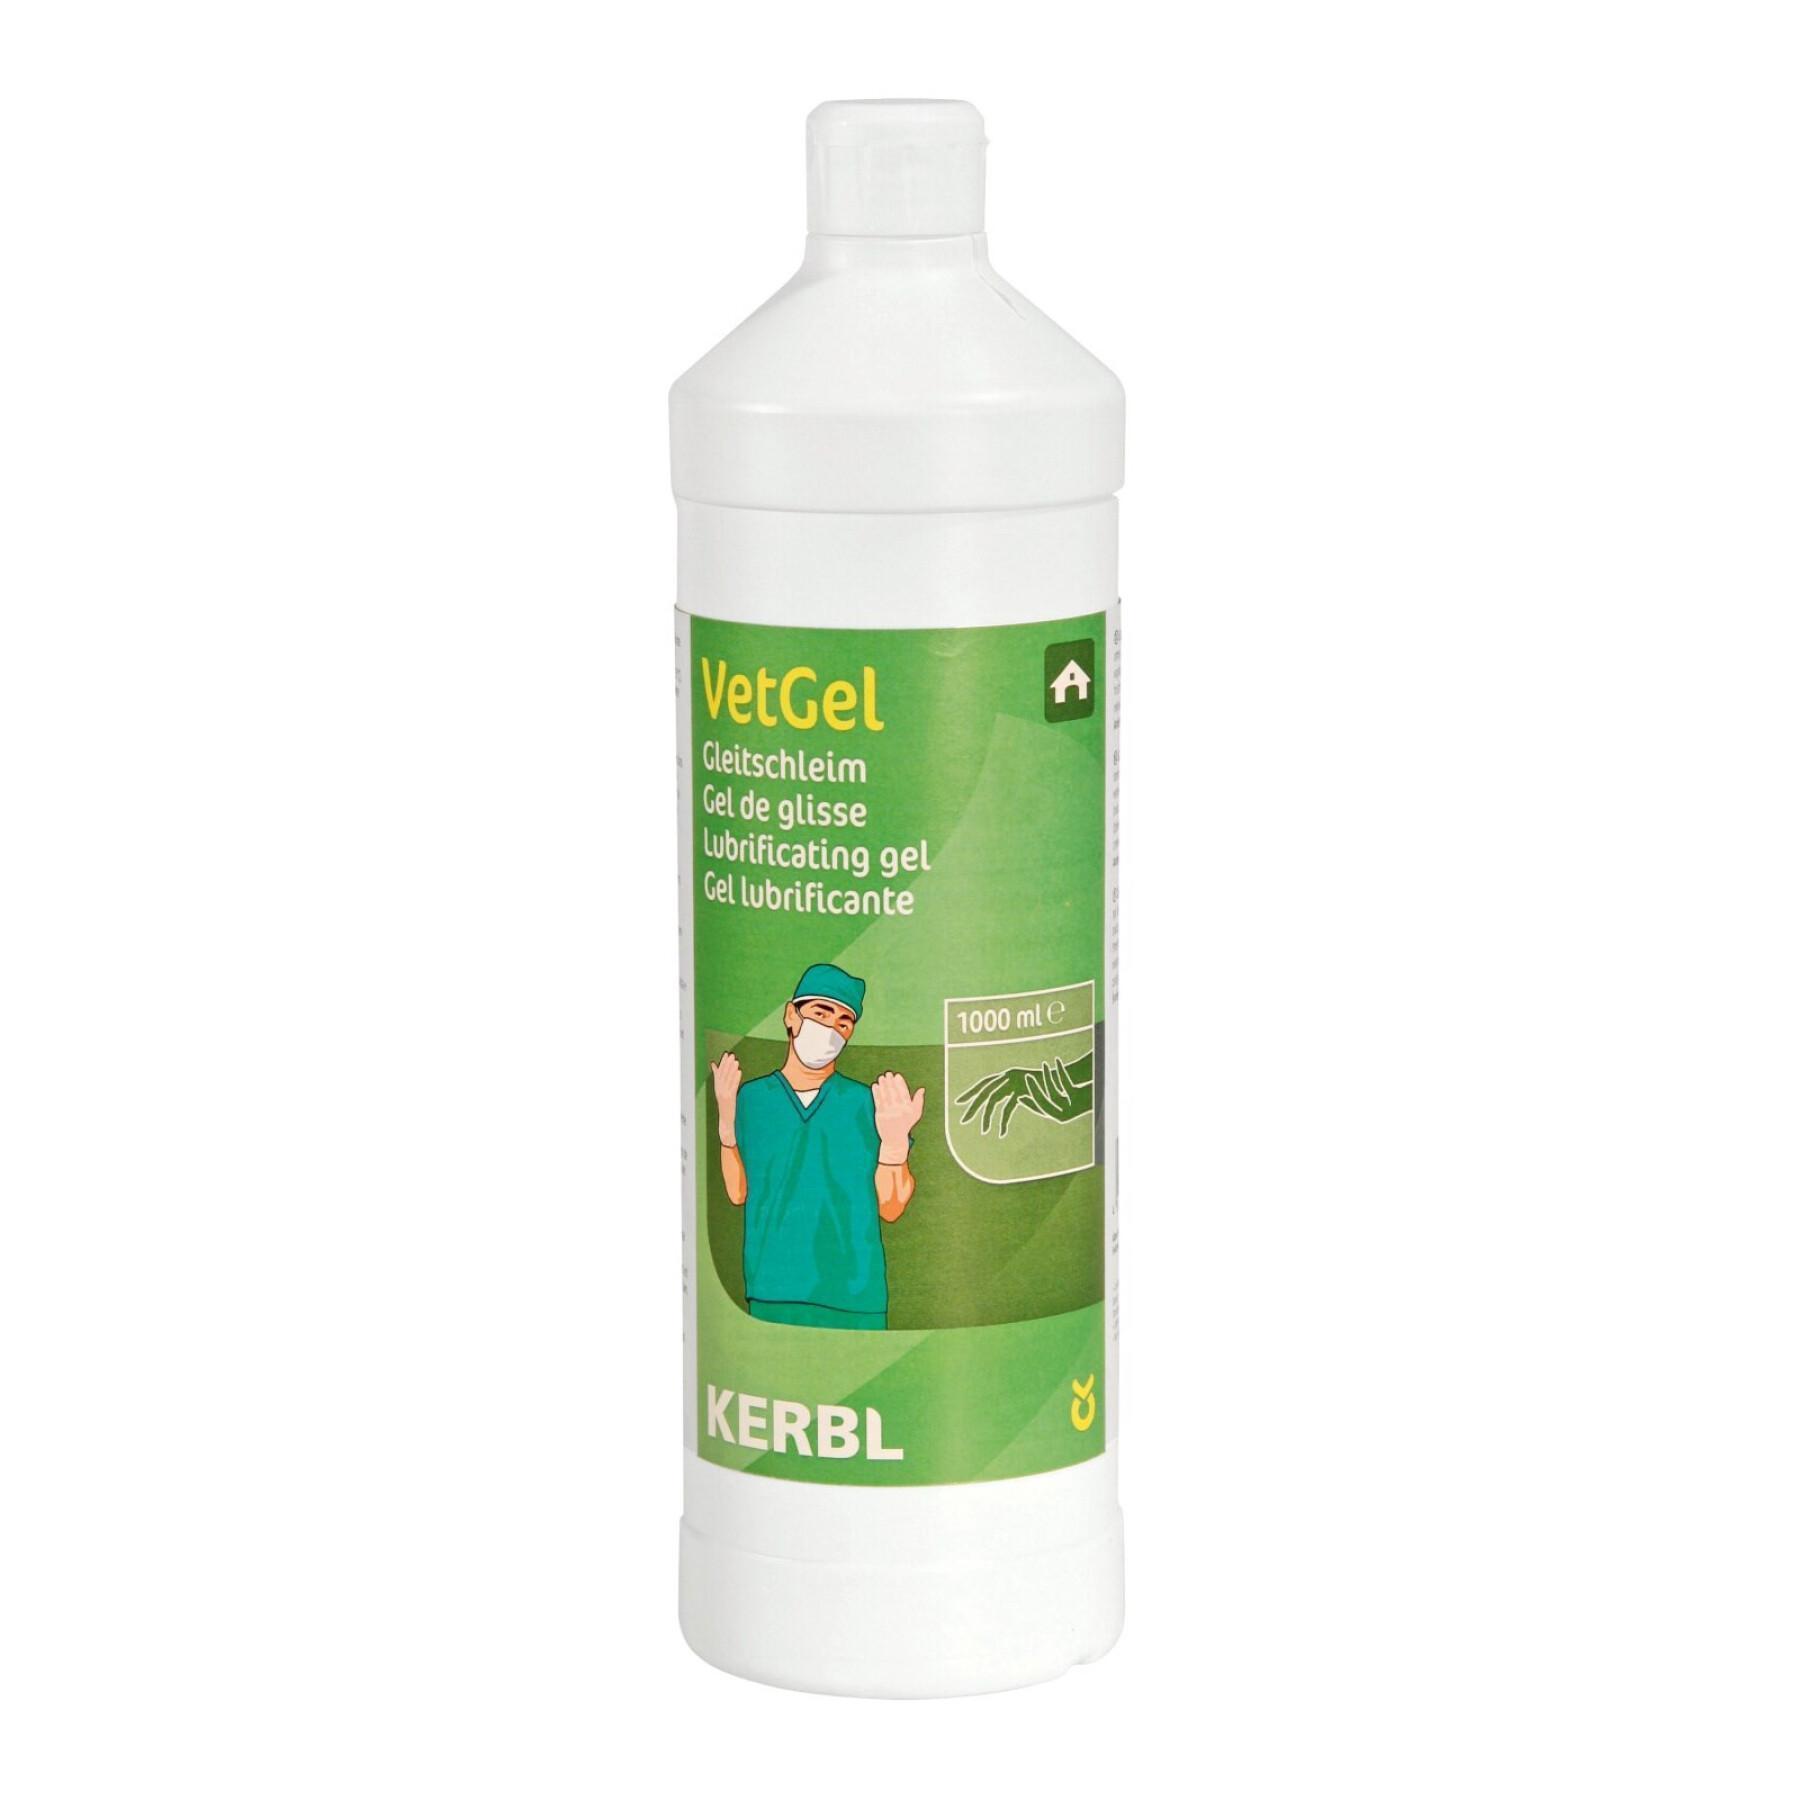 Lubricating gel for cattle Kerbl VetGel